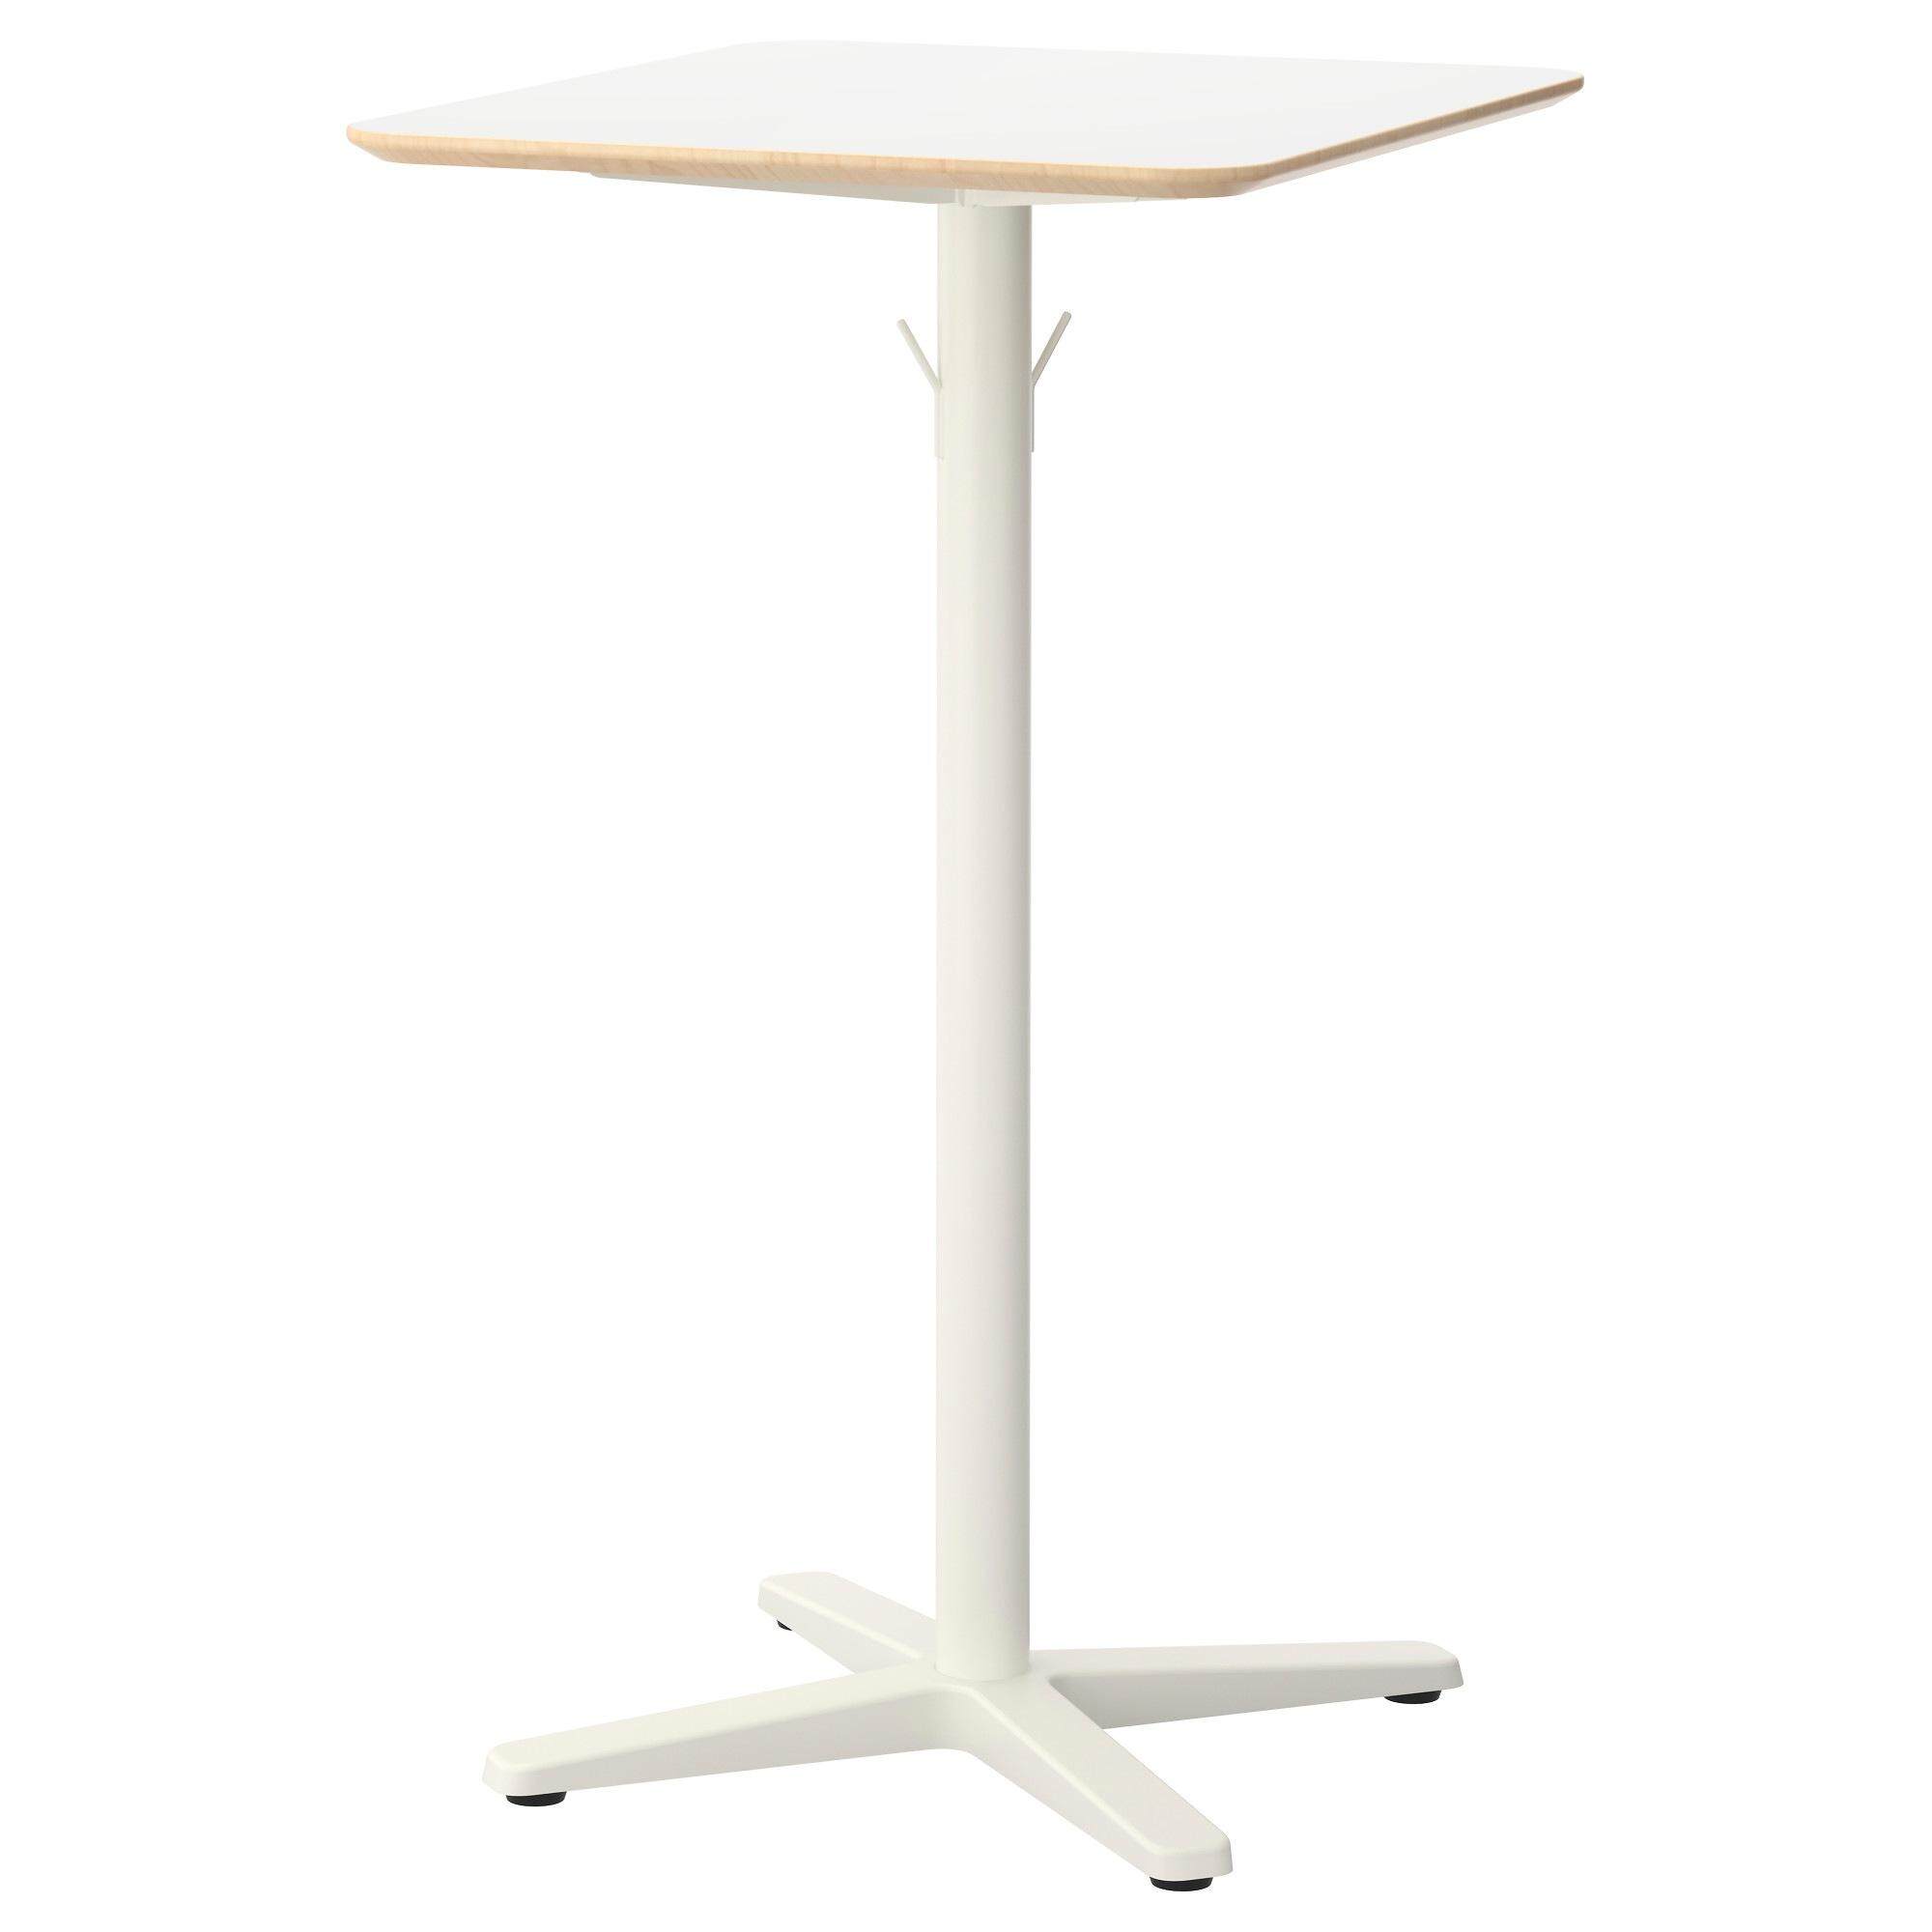 [ด่วน!! โปรโมชั่นมีจำนวนจำกัด] โต๊ะบาร์, ขาว, ขาว ขนาด 70x60 ซม. โต๊ะบาร์ BILLSTA ขนาด 70x60 ซม.